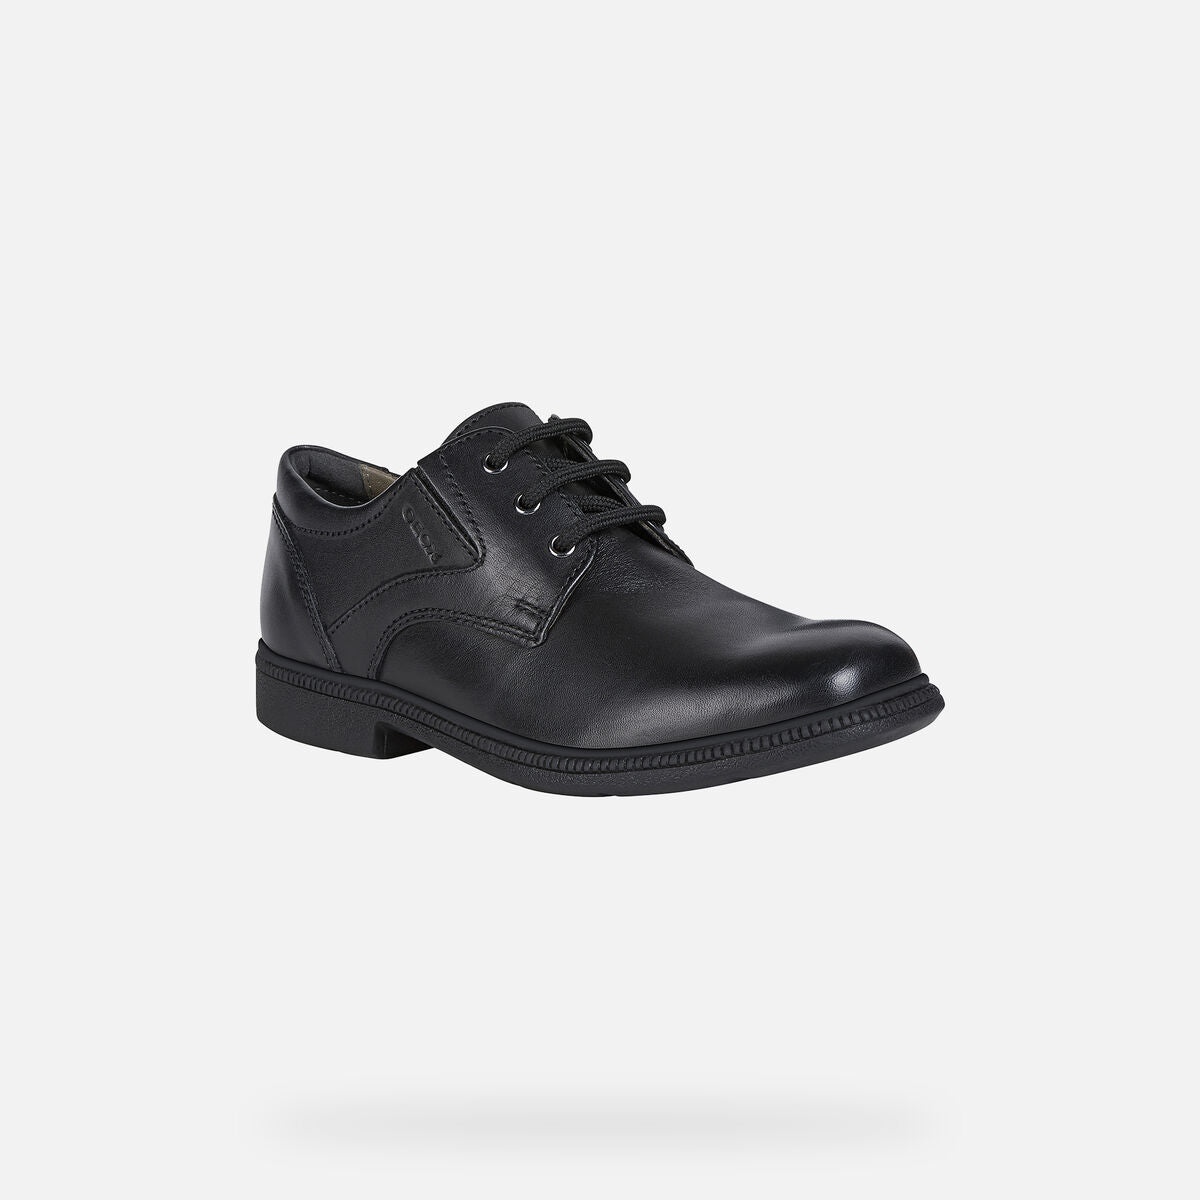 Geox Boys Federico Oxford Uniform Shoe